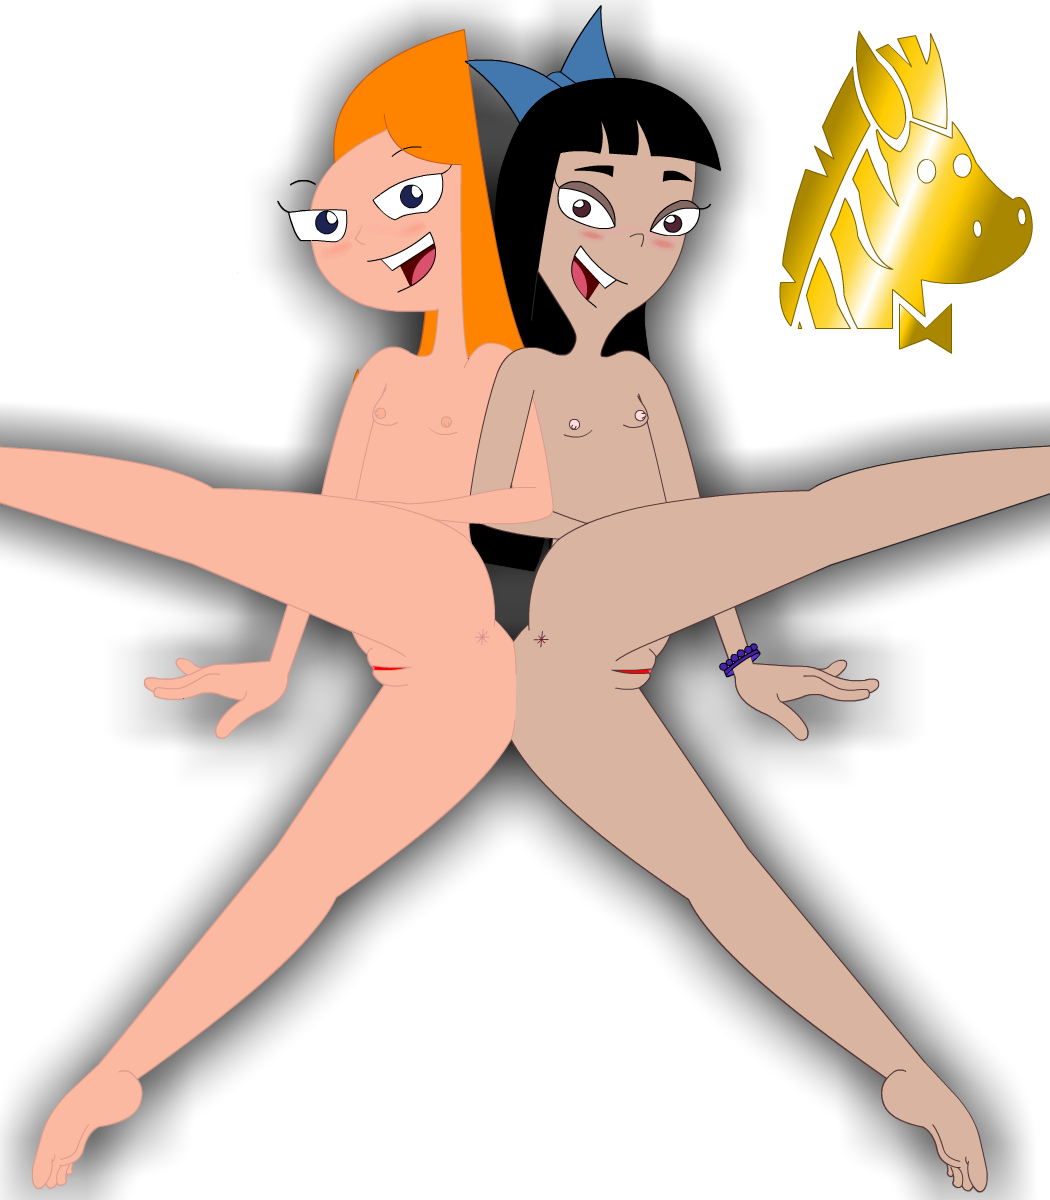 Phineas und ferb nude